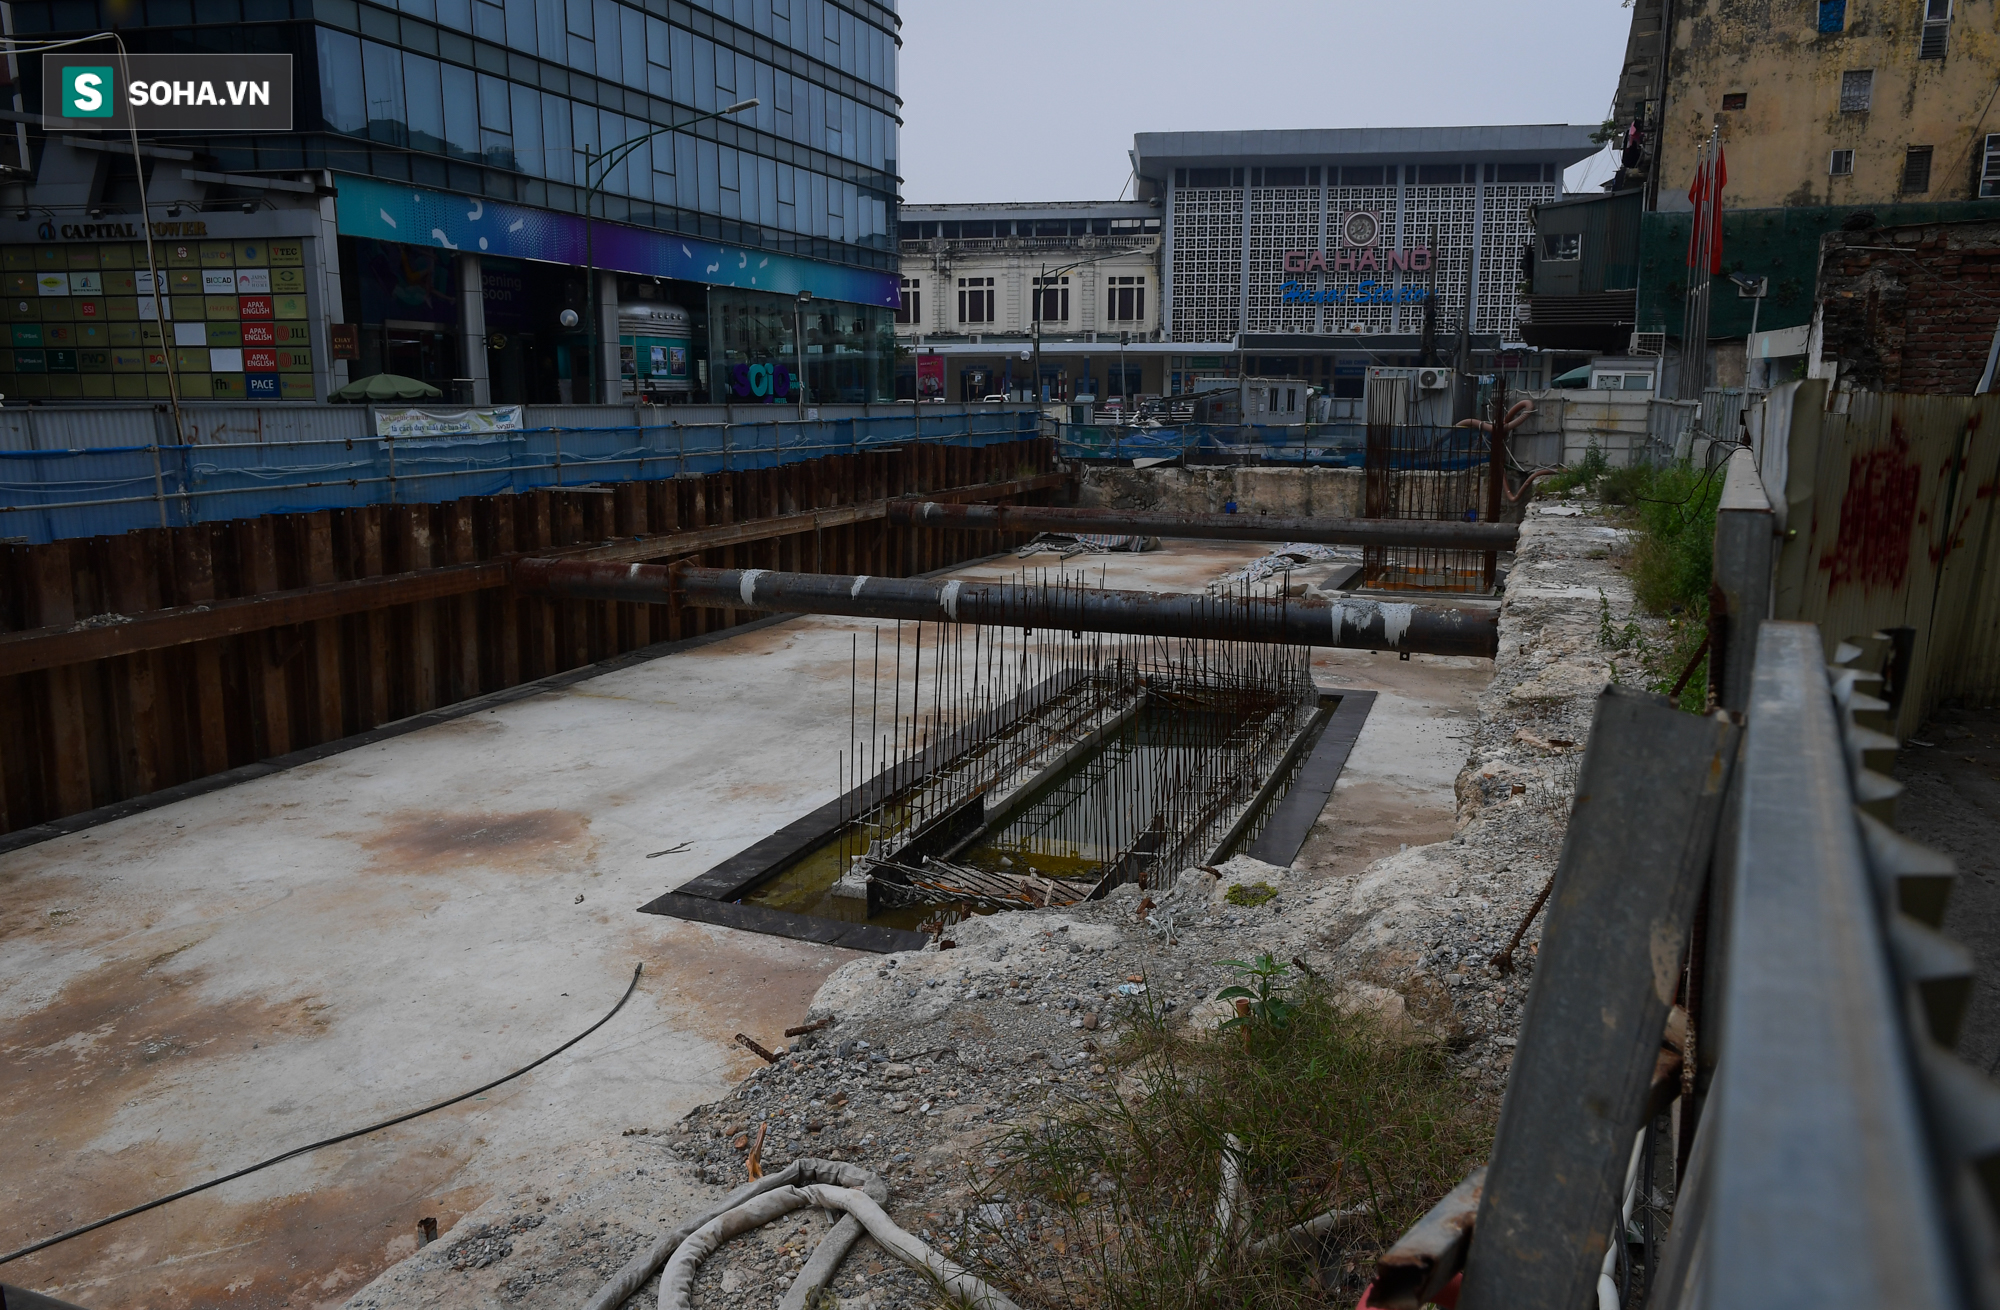 Xây trước tuyến Cát Linh-Hà Đông 1 năm, dự án Metro Nhổn-Ga Hà Nội vẫn chưa xong mặt bằng - Ảnh 6.